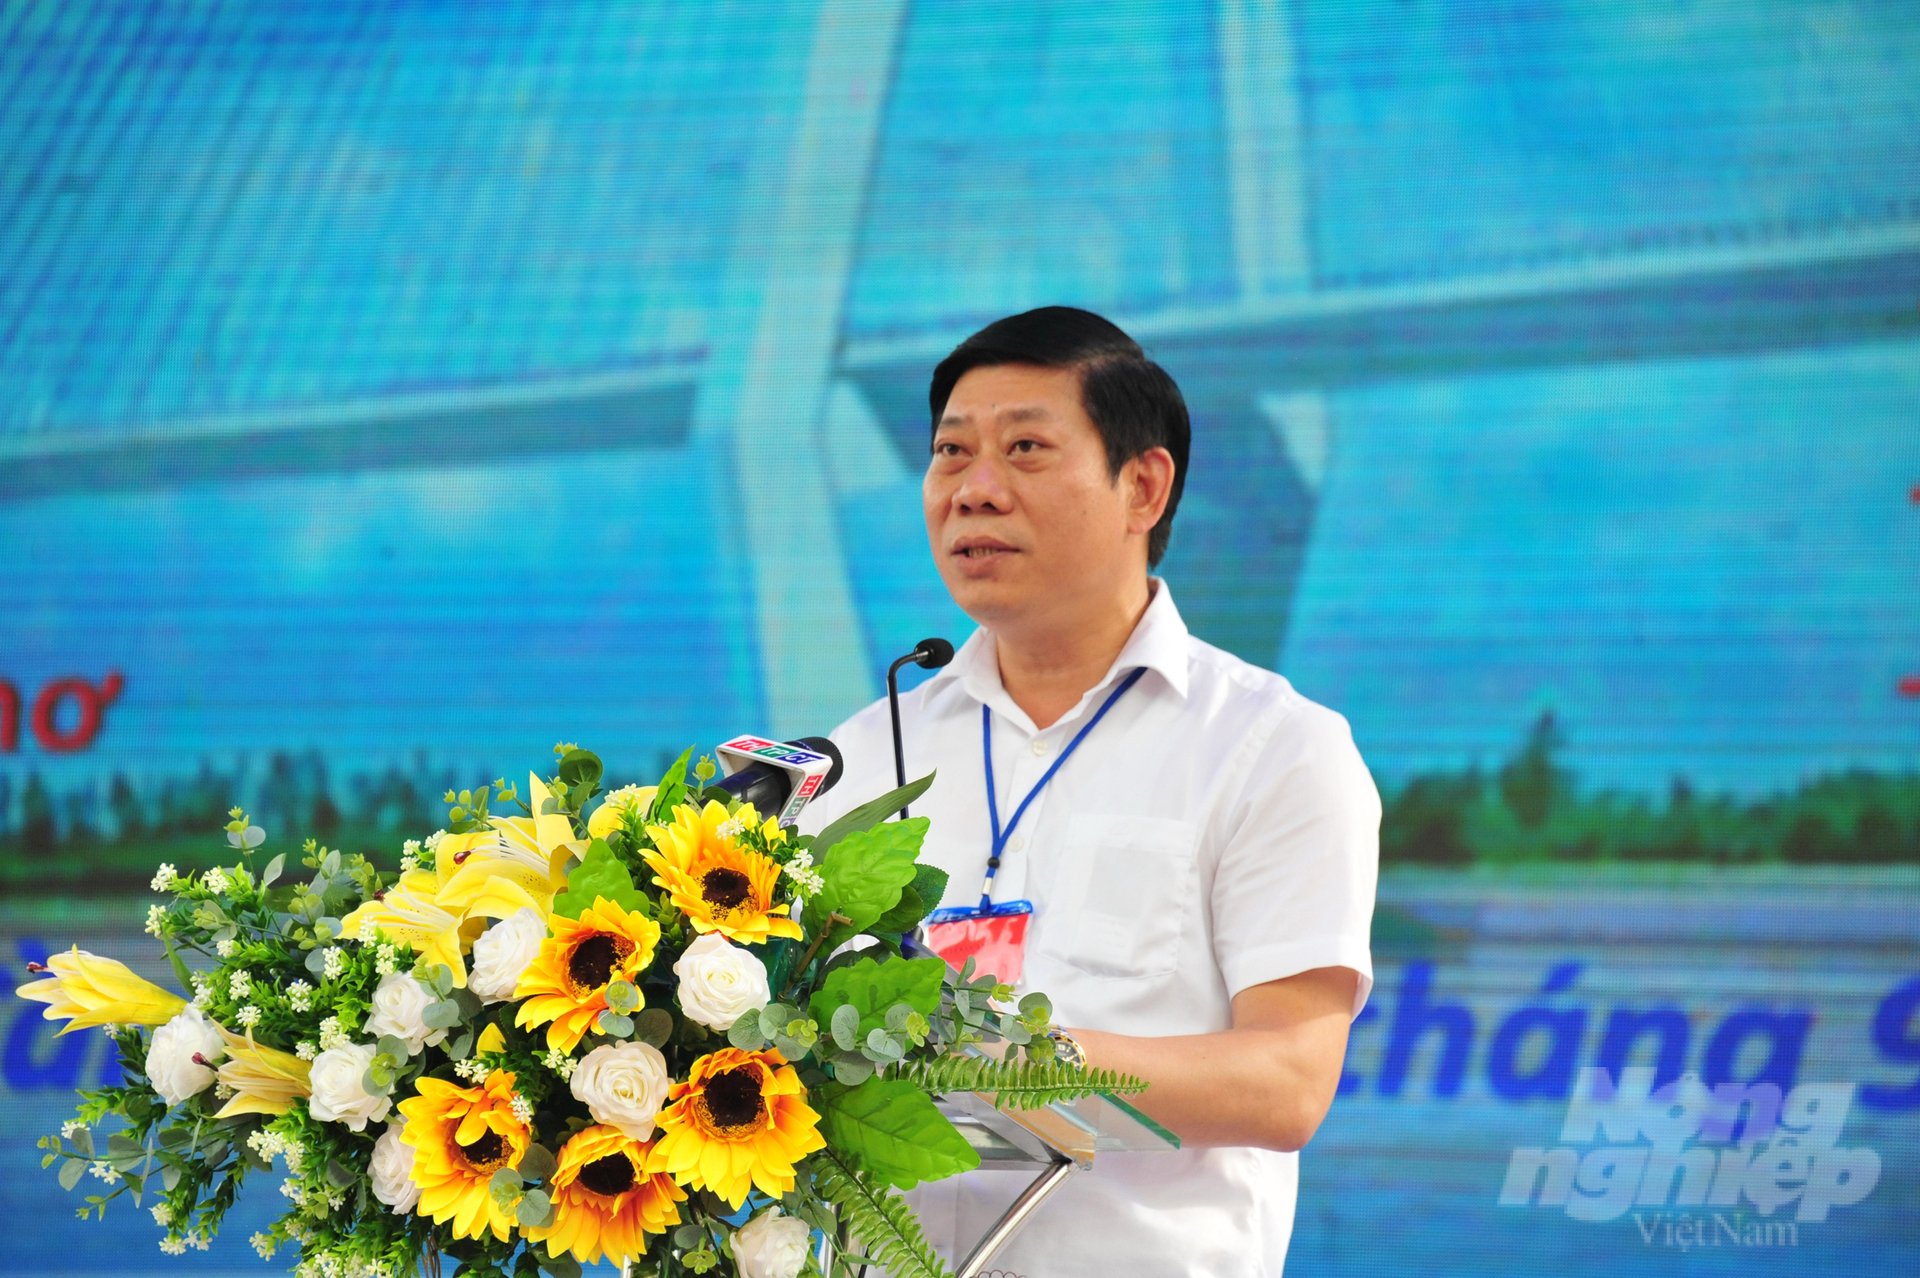 Ông Nguyễn Quang Hùng, Cục trưởng Cục Kiểm ngư (Bộ NN-PTNT) phát biểu tại buổi lễ thả cá giống xuống sông Hậu. Ảnh: Lê Hoàng Vũ.